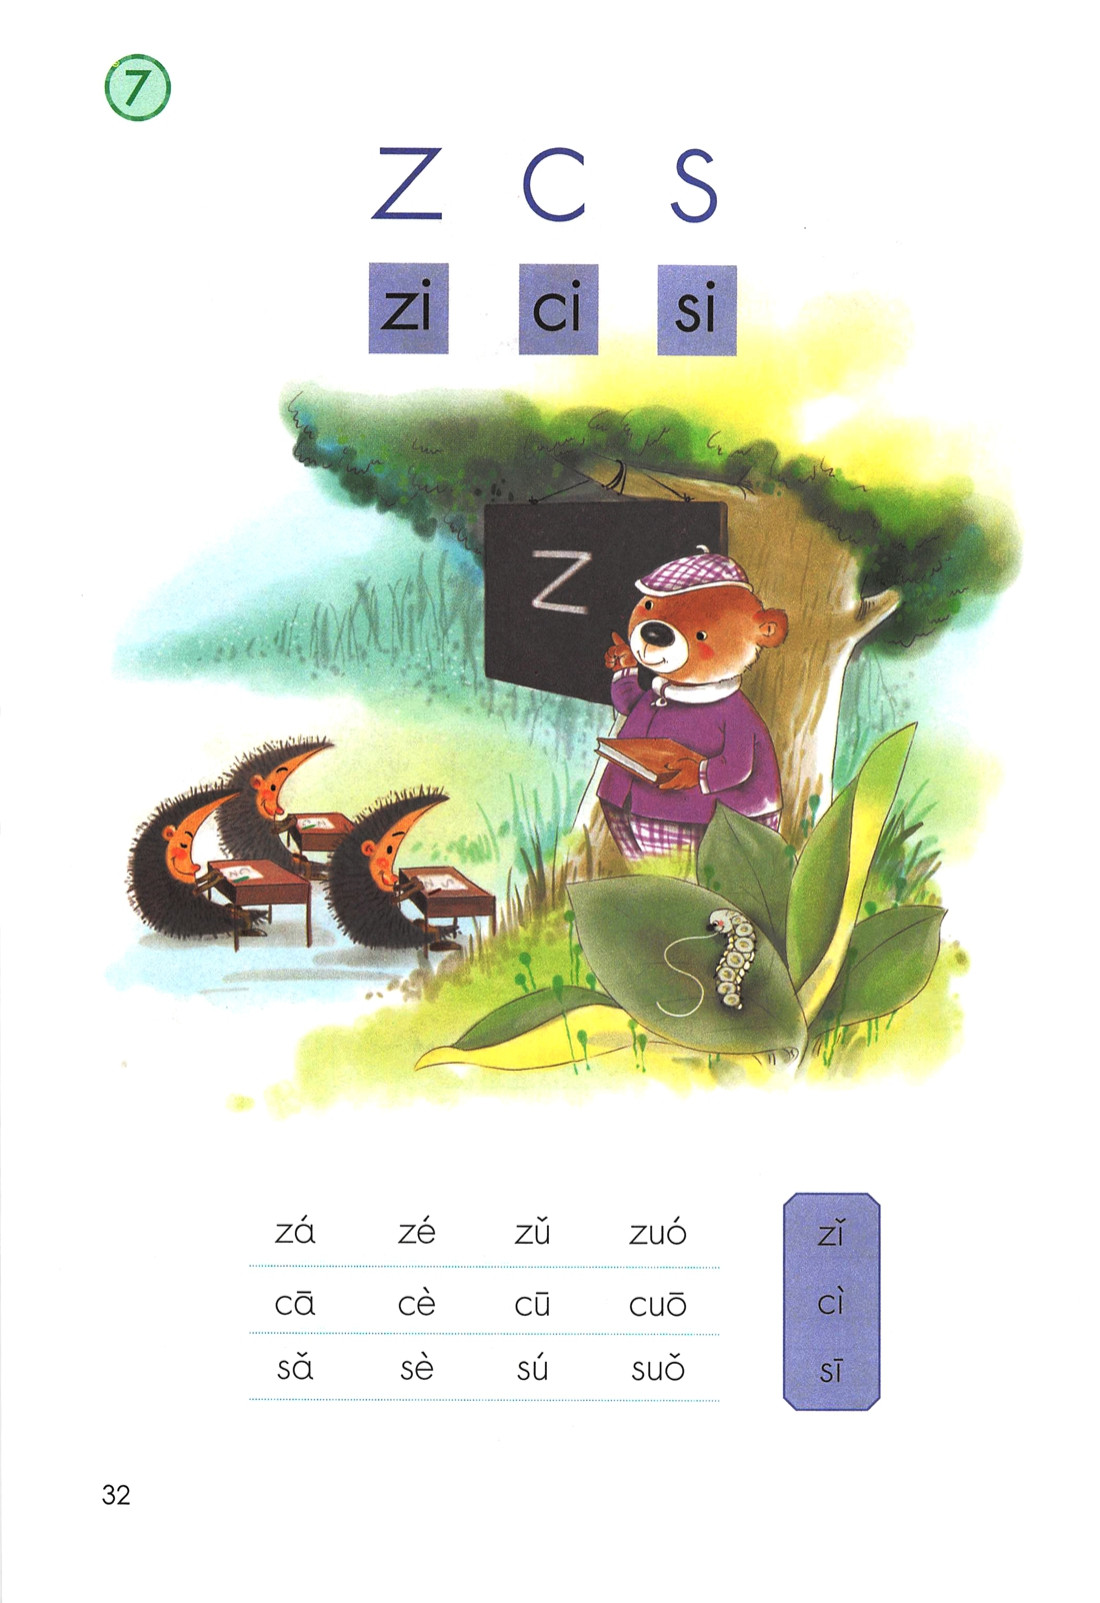 一年级语文上册-汉语拼音7:z c s (P32-P33) - 做我们喜欢的事